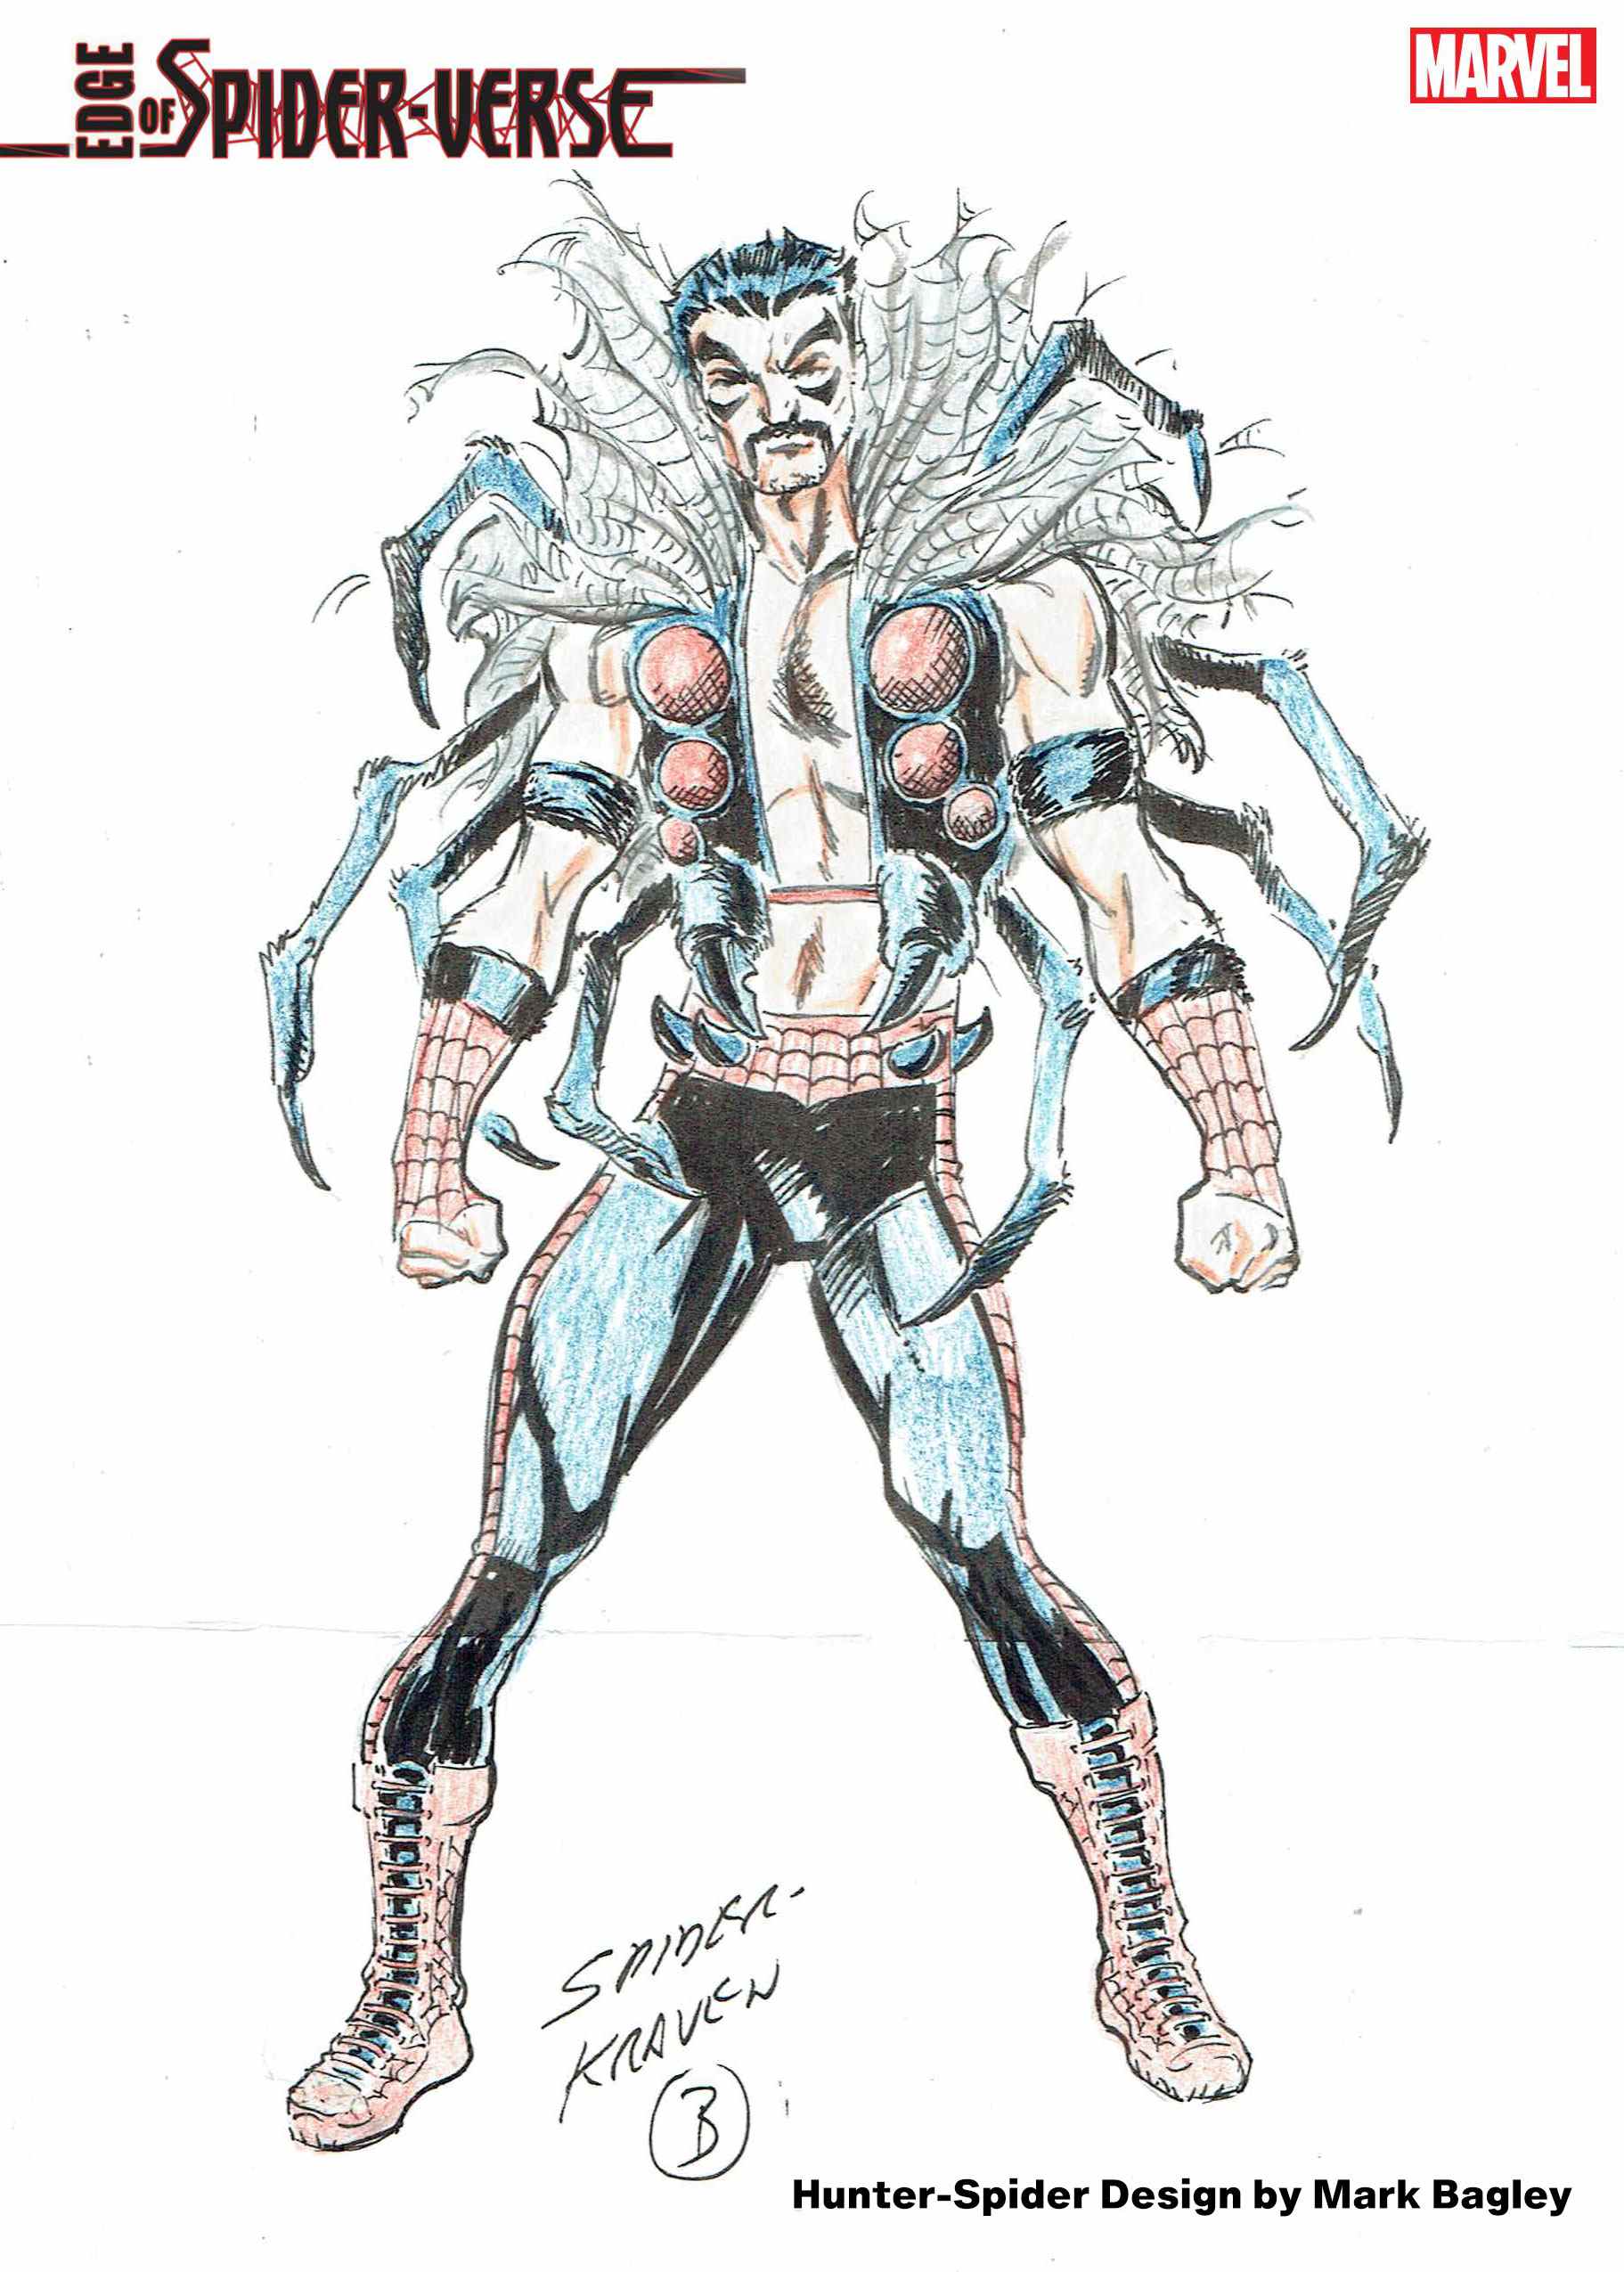 Conception du personnage Hunter-Spider par Mark Bagley